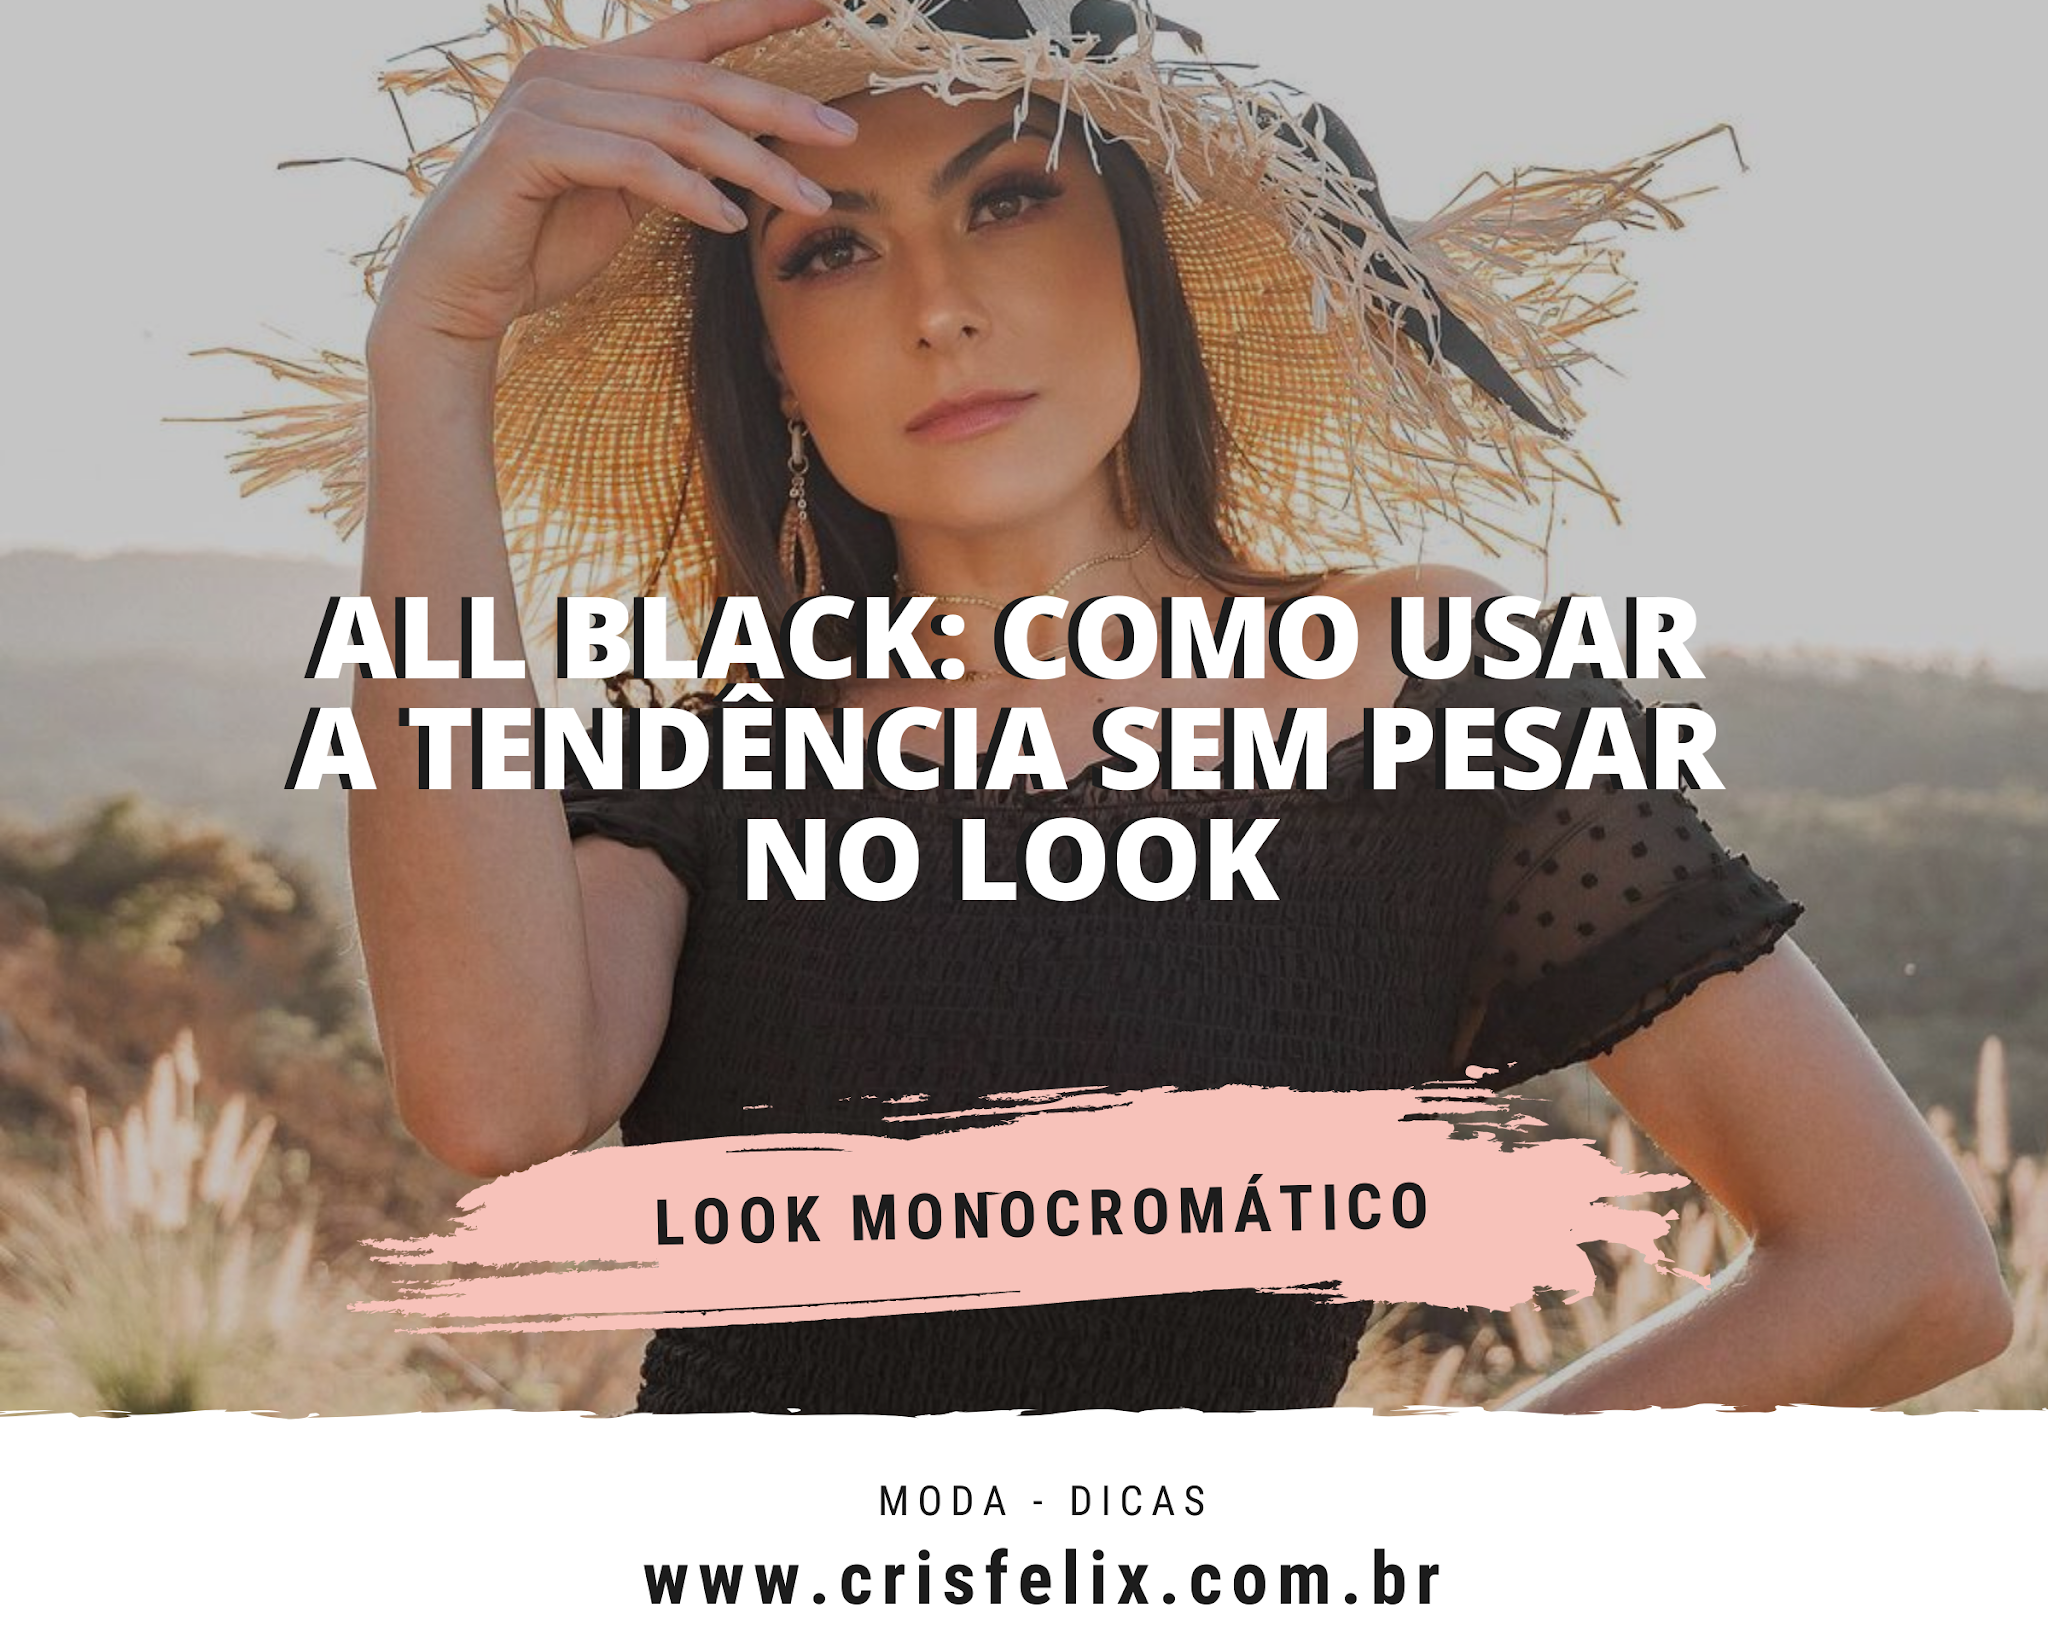 All black: como usar a tendência sem pesar no look